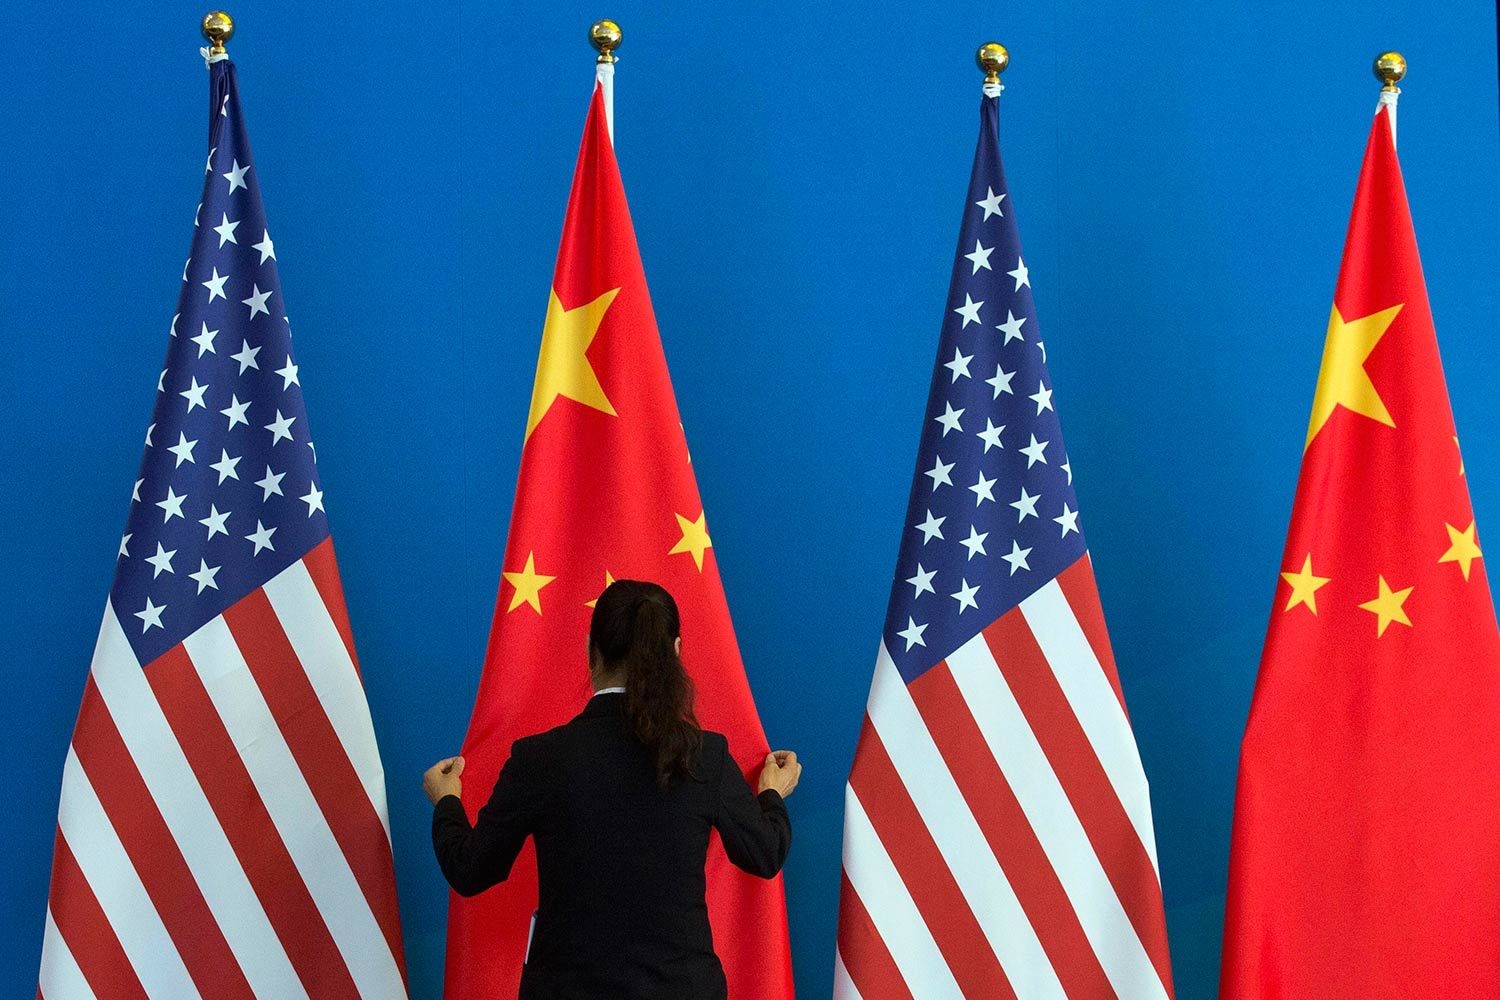 ВТО разрешила Китаю ввести ответные пошлины на товары США